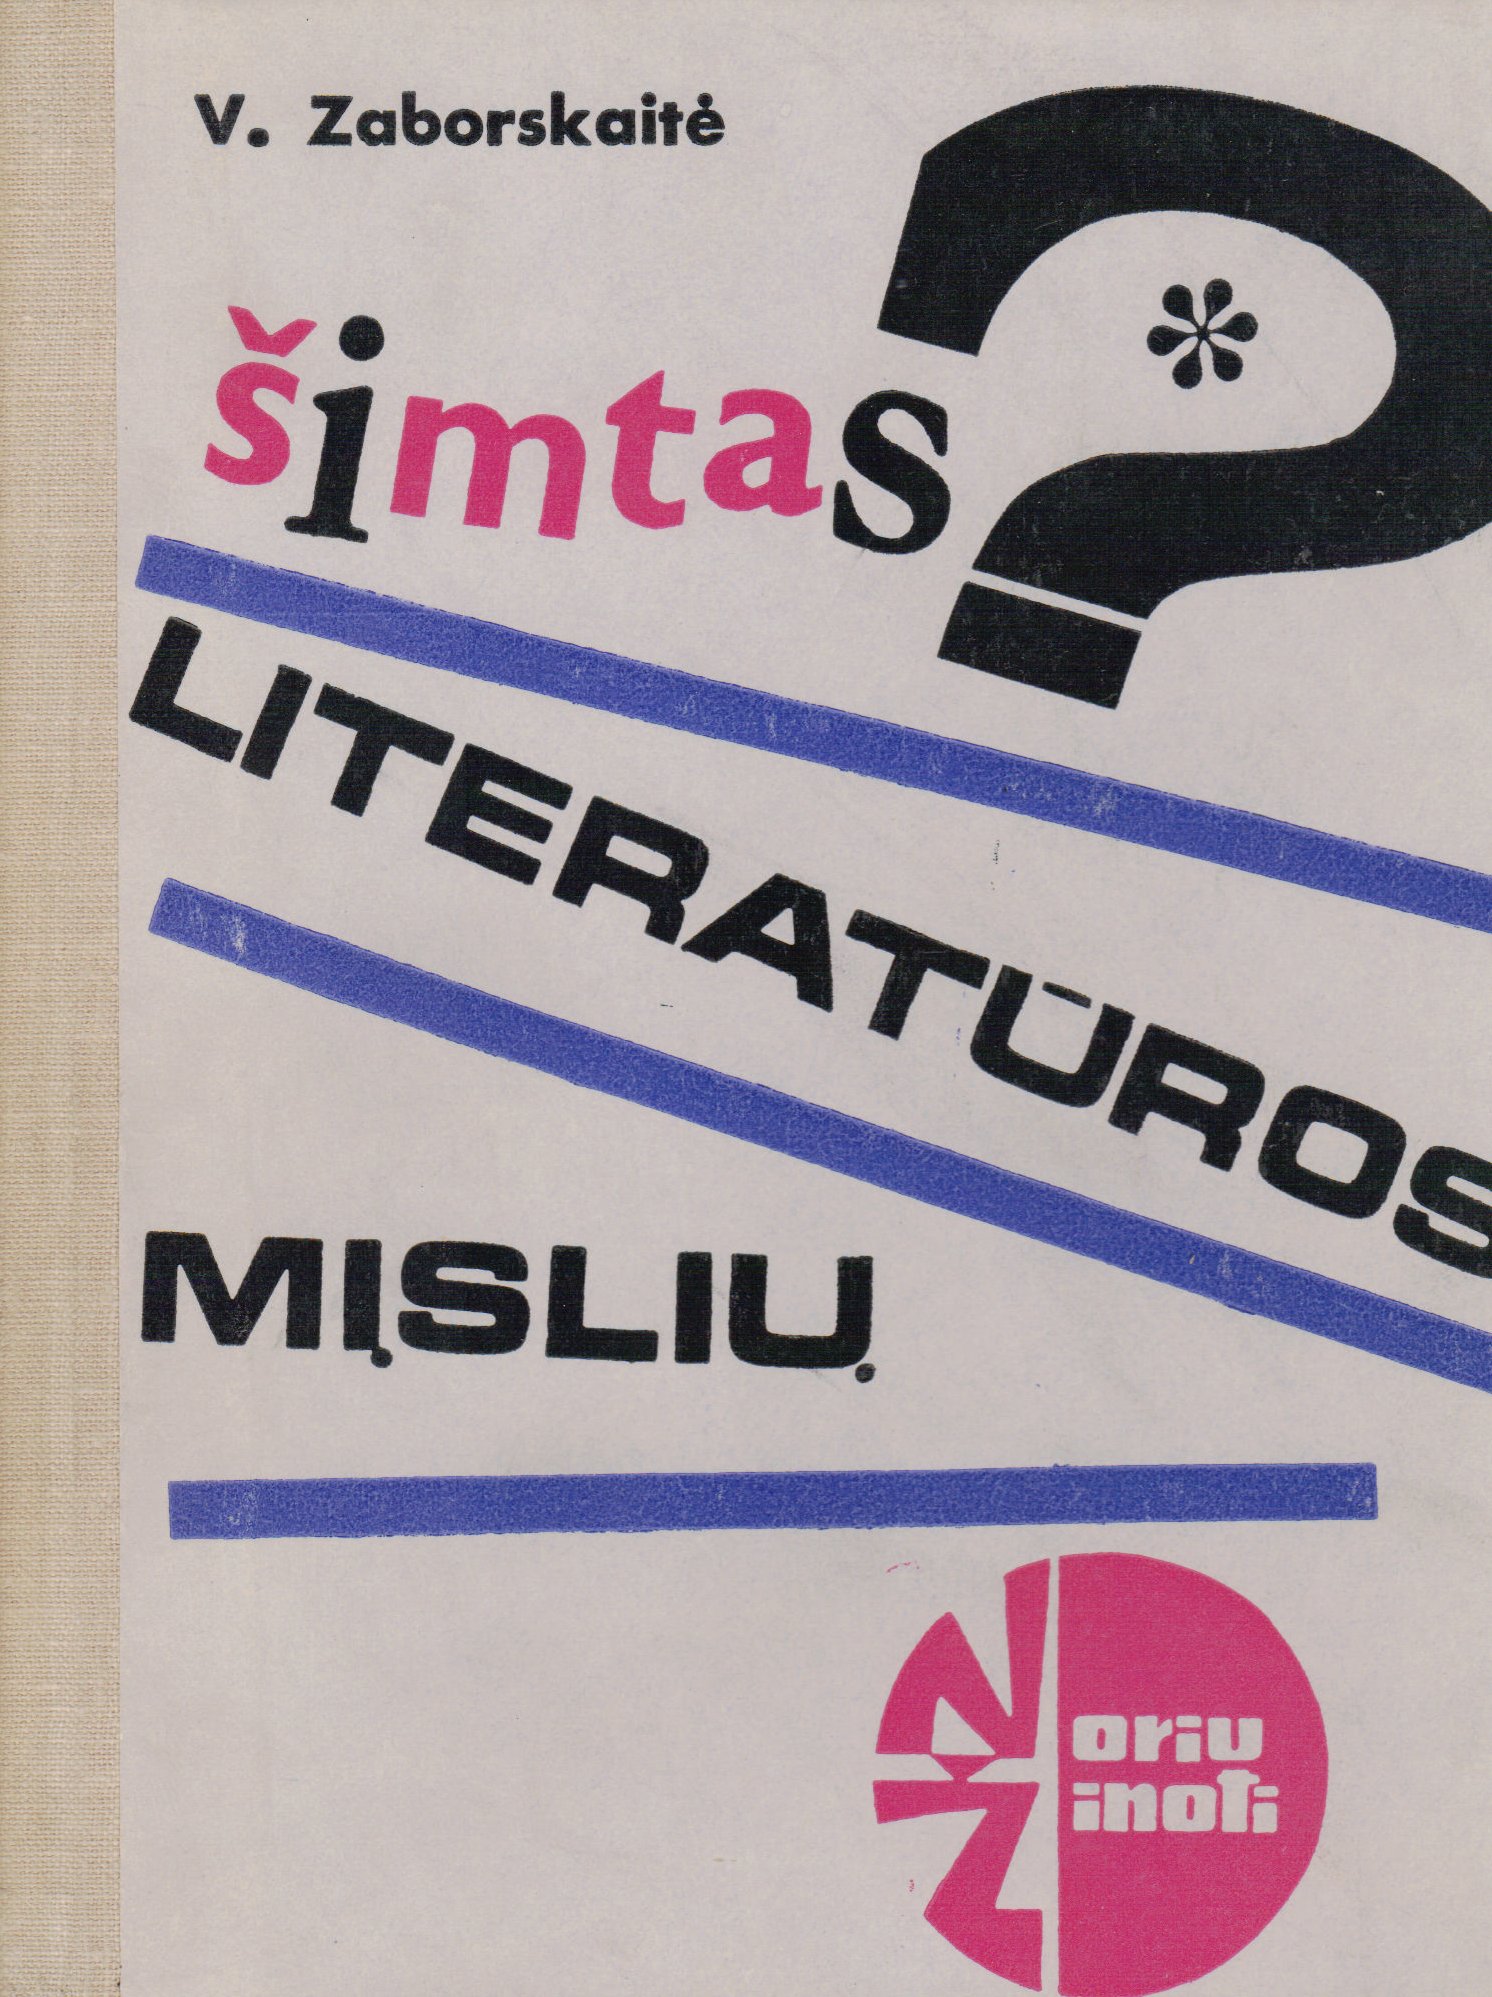 V. Zaborskaitė. Šimtas literatūros mįslių. V., 1966. MLLM 5124